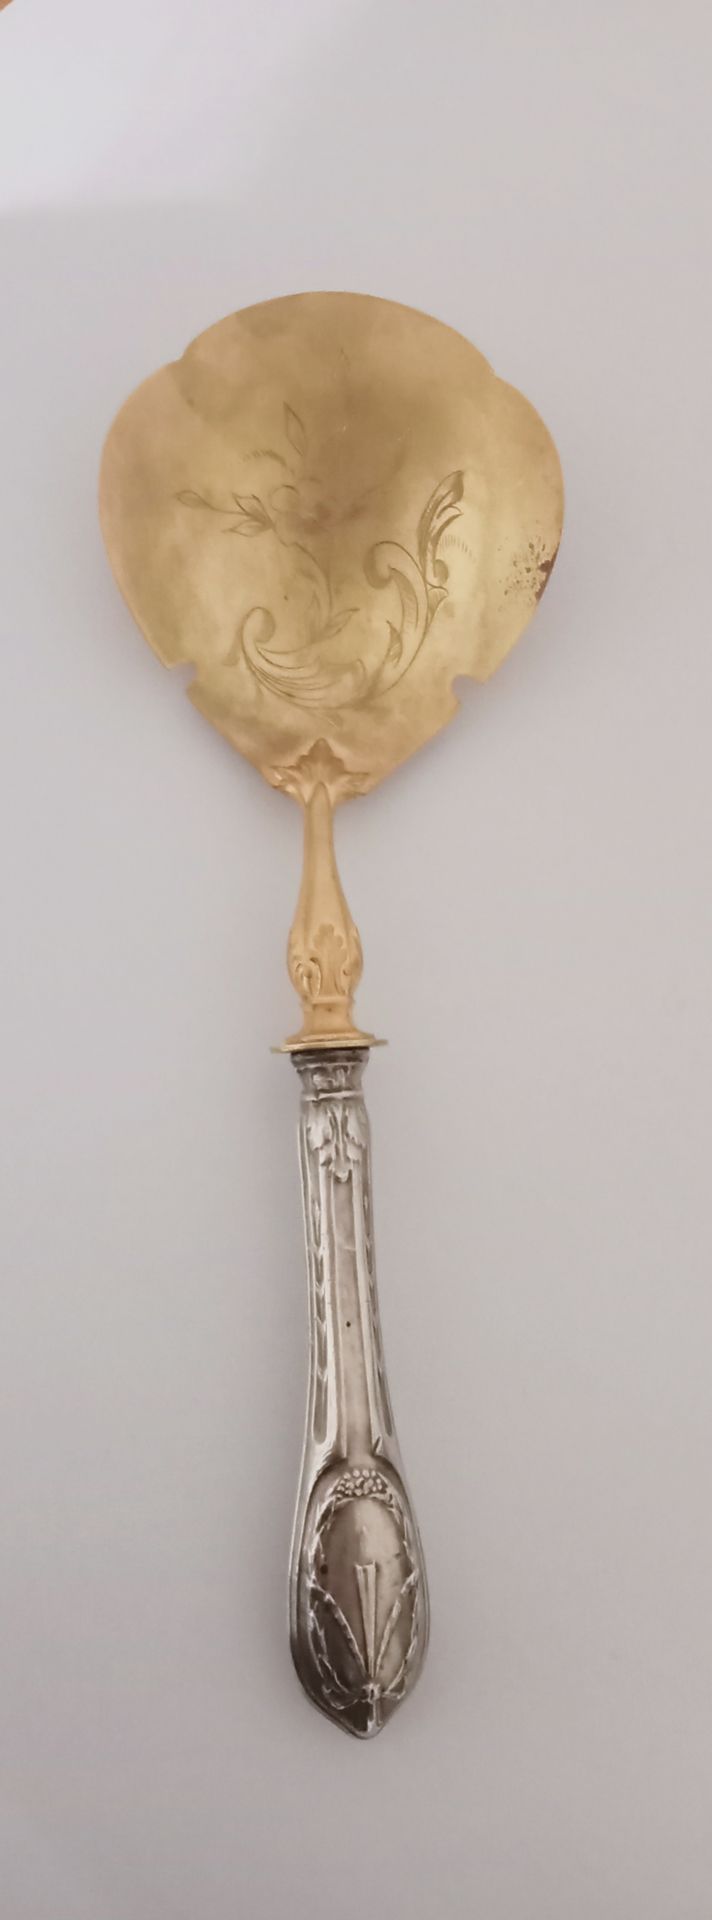 Null (E) 一把冰淇淋勺子，勺子是镀金的，上面刻有花卉卷轴的装饰，把手是银的，上面有刺叶和丝带蝴蝶结。 

刮痕、撞伤和变形